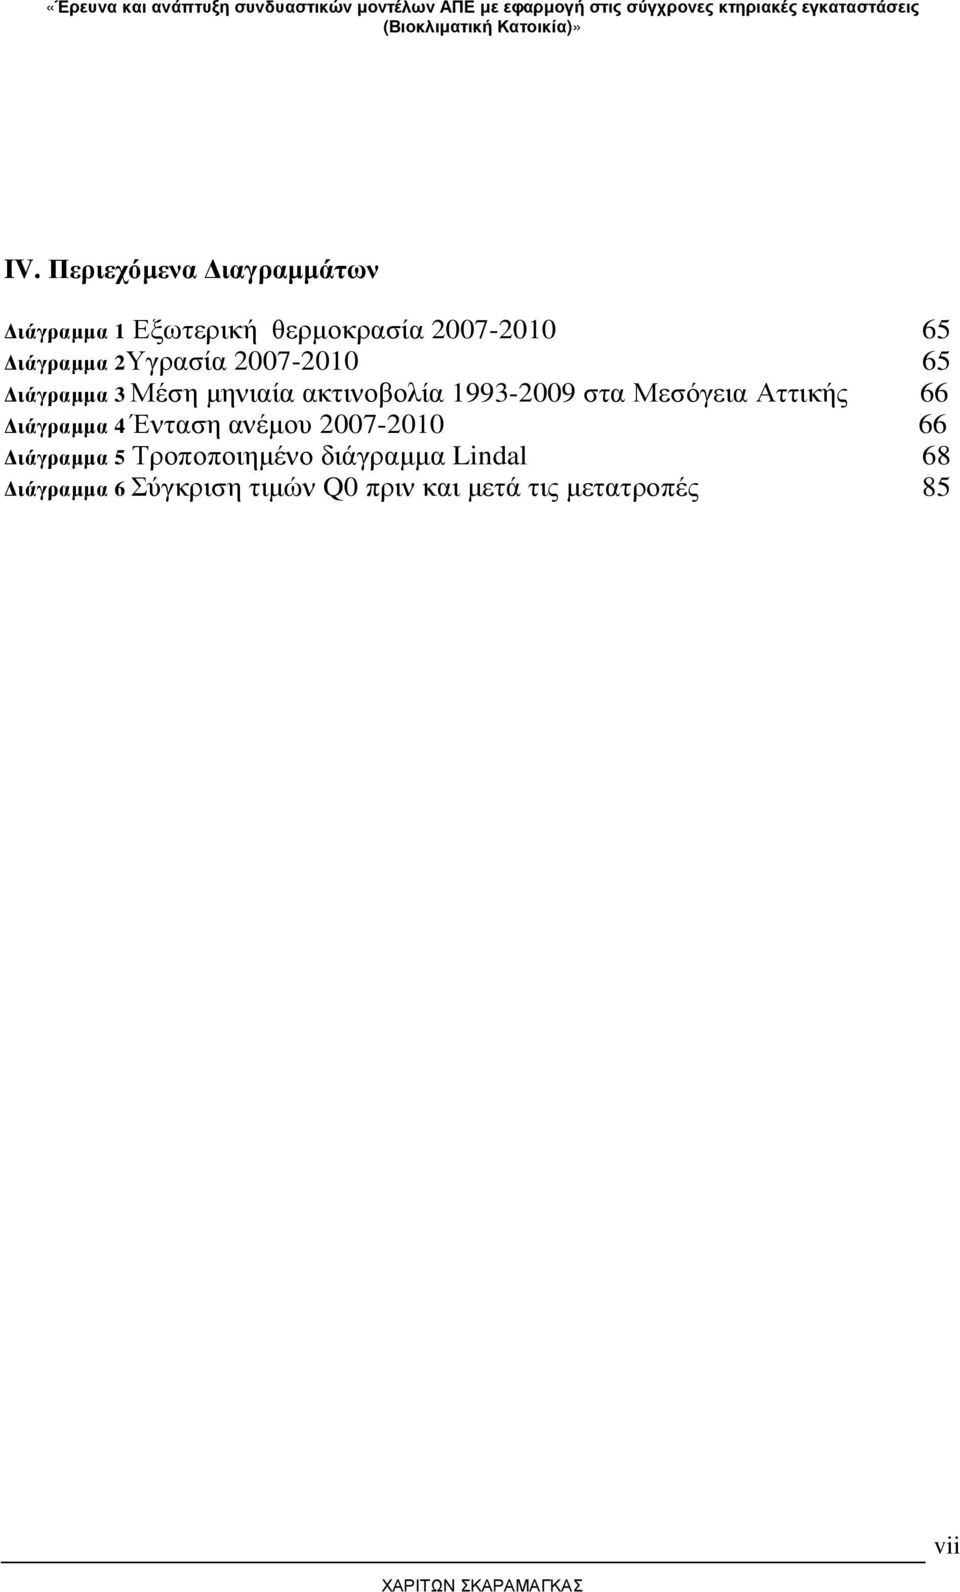 Μεσόγεια Αττικής 66 ιάγραµµα 4 Ένταση ανέµου 2007-2010 66 ιάγραµµα 5